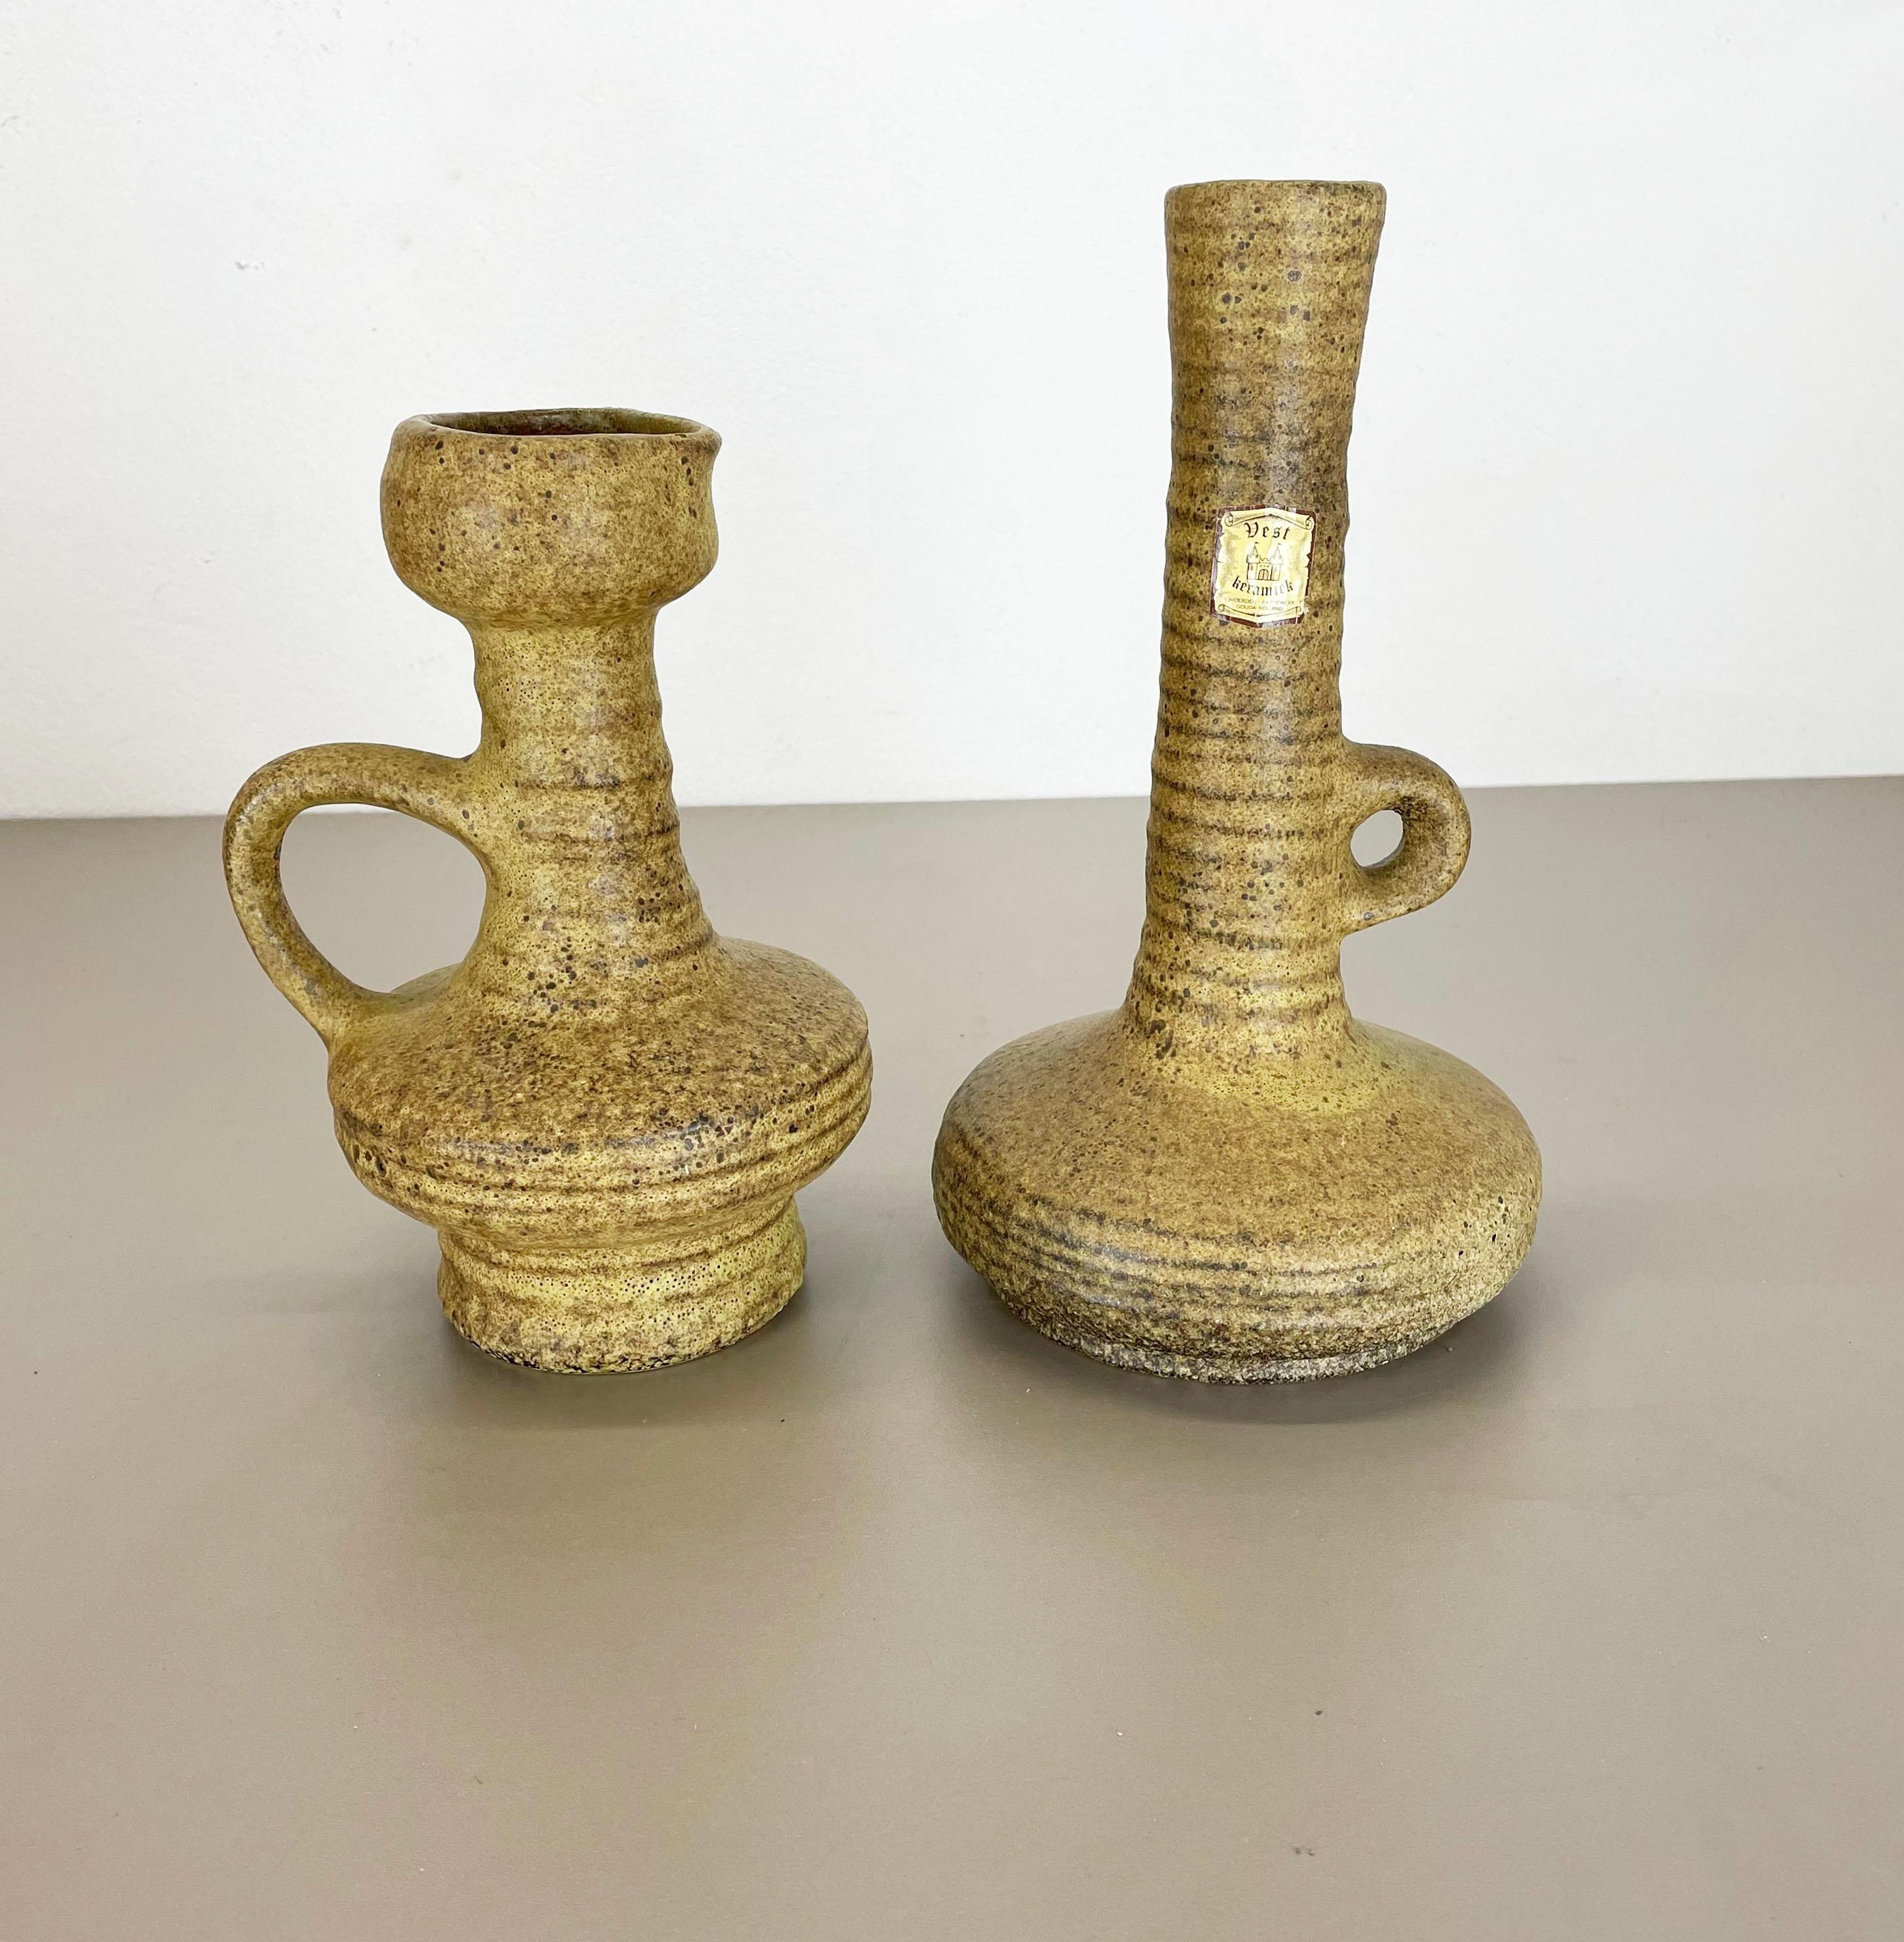 Artikel:

Keramikvasen 2er-Set


Produzent:

VEST Ceramics, Niederlande



Jahrzehnt:

1970s



Satz von 2 originalen Vintage Studio Pottery Vasen wurde in den 1970er Jahren von Vest Ceramics, Niederlande, hergestellt. Es ist aus